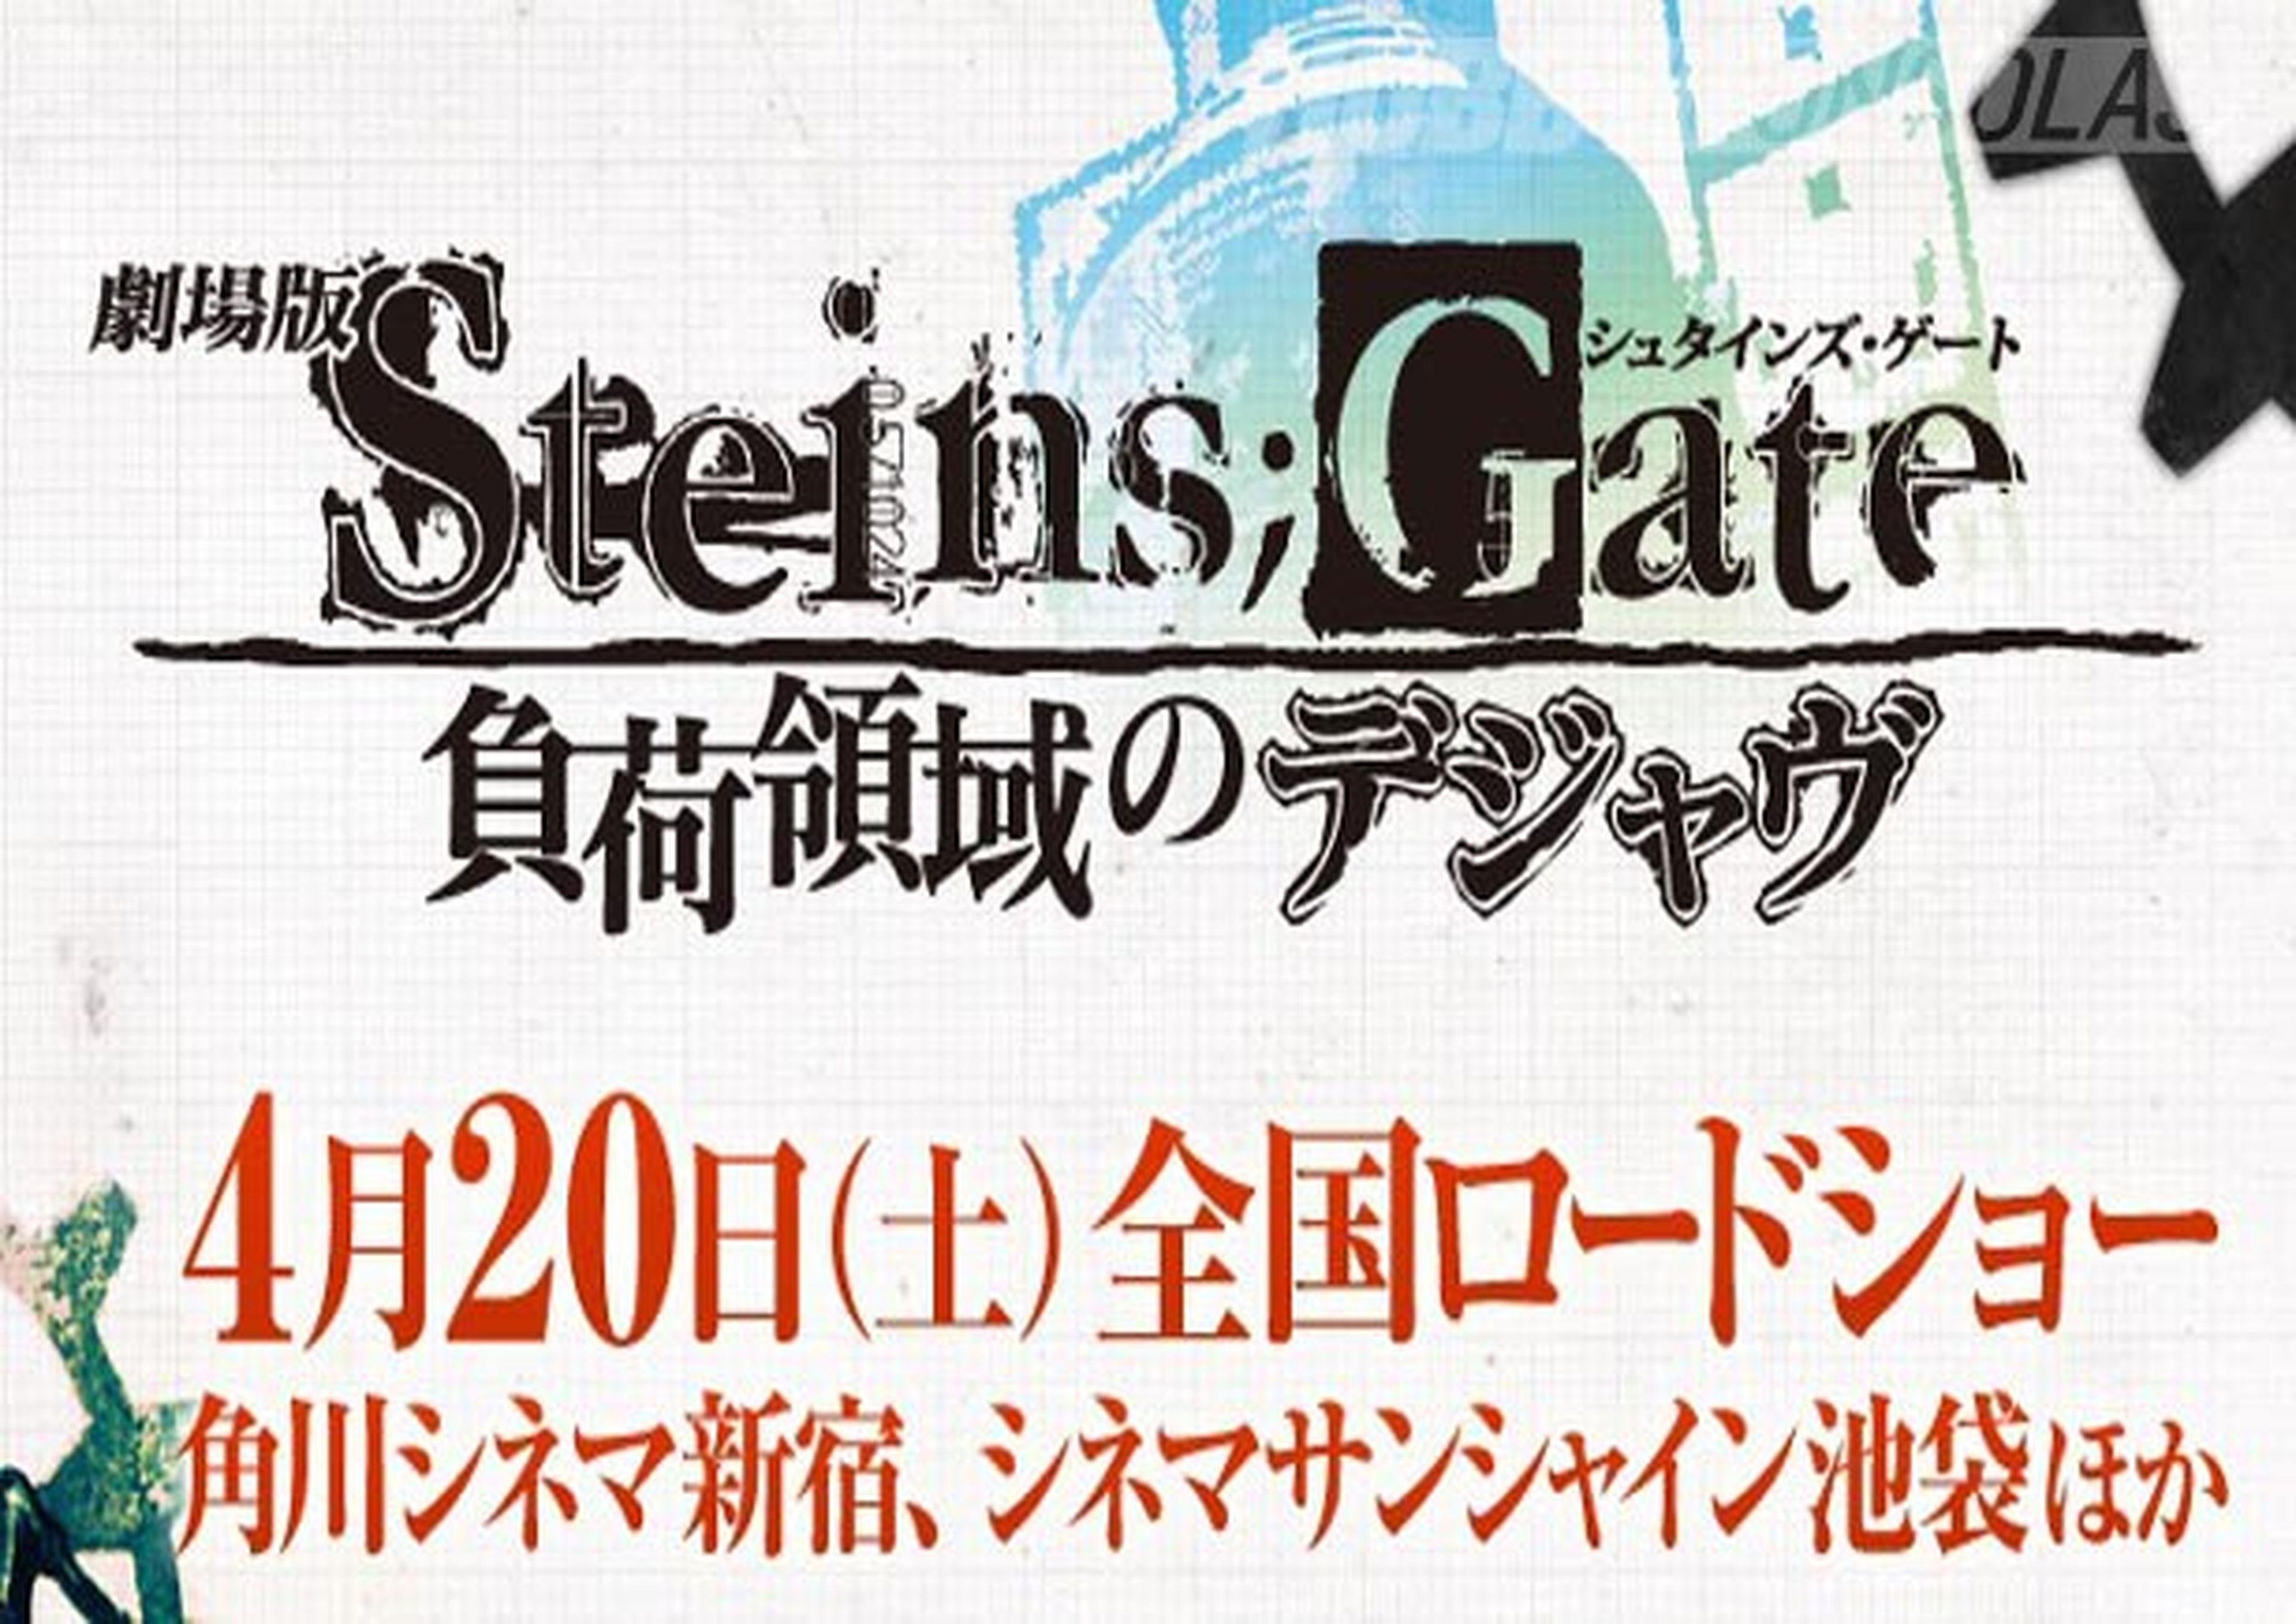 Fecha de estreno de la película de Steins;Gate